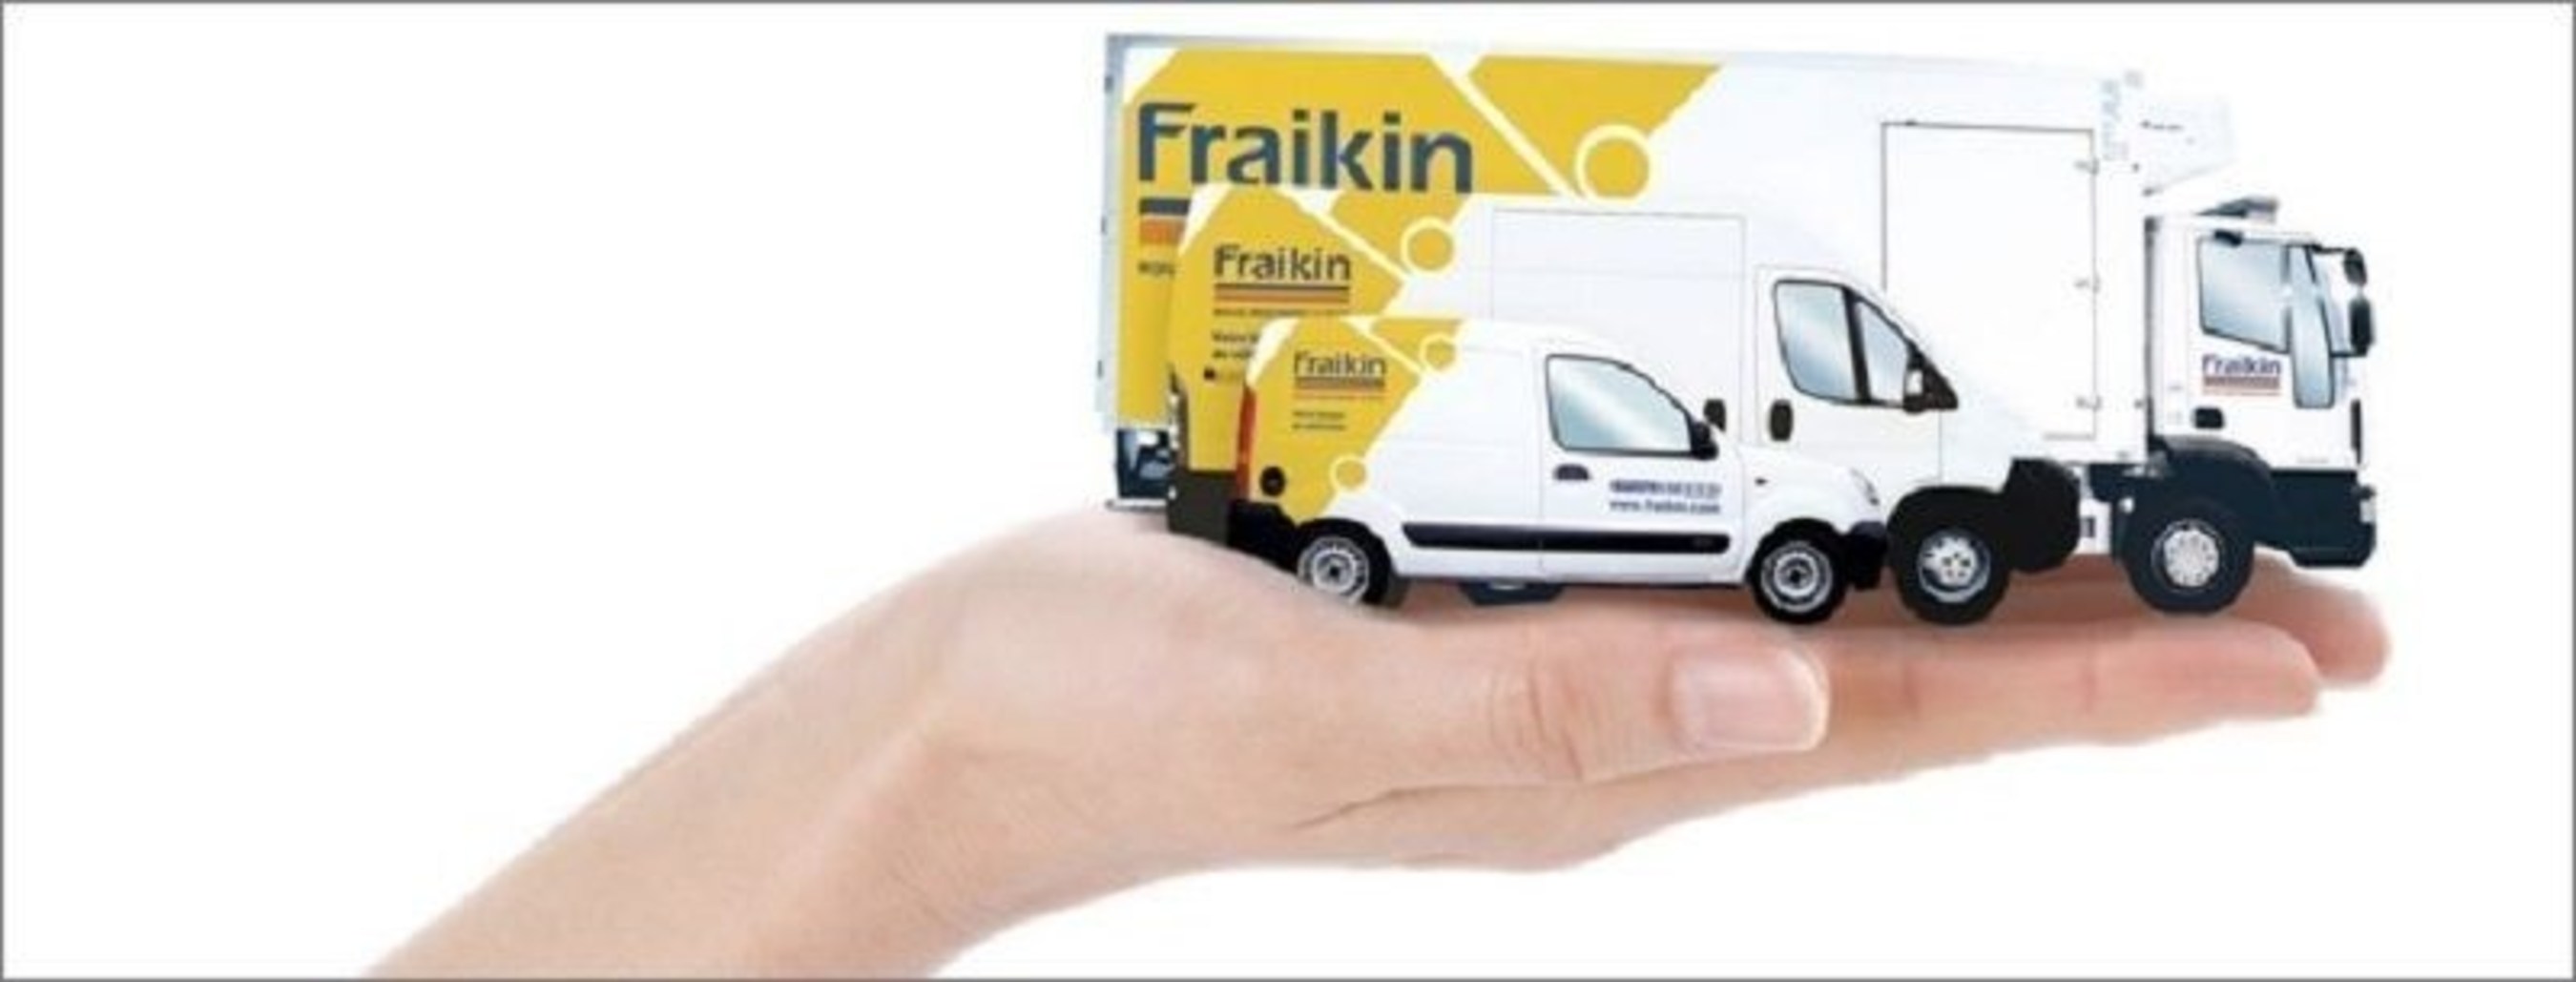 Fraikin Logo (PRNewsFoto/Fraikin) (PRNewsFoto/Fraikin)